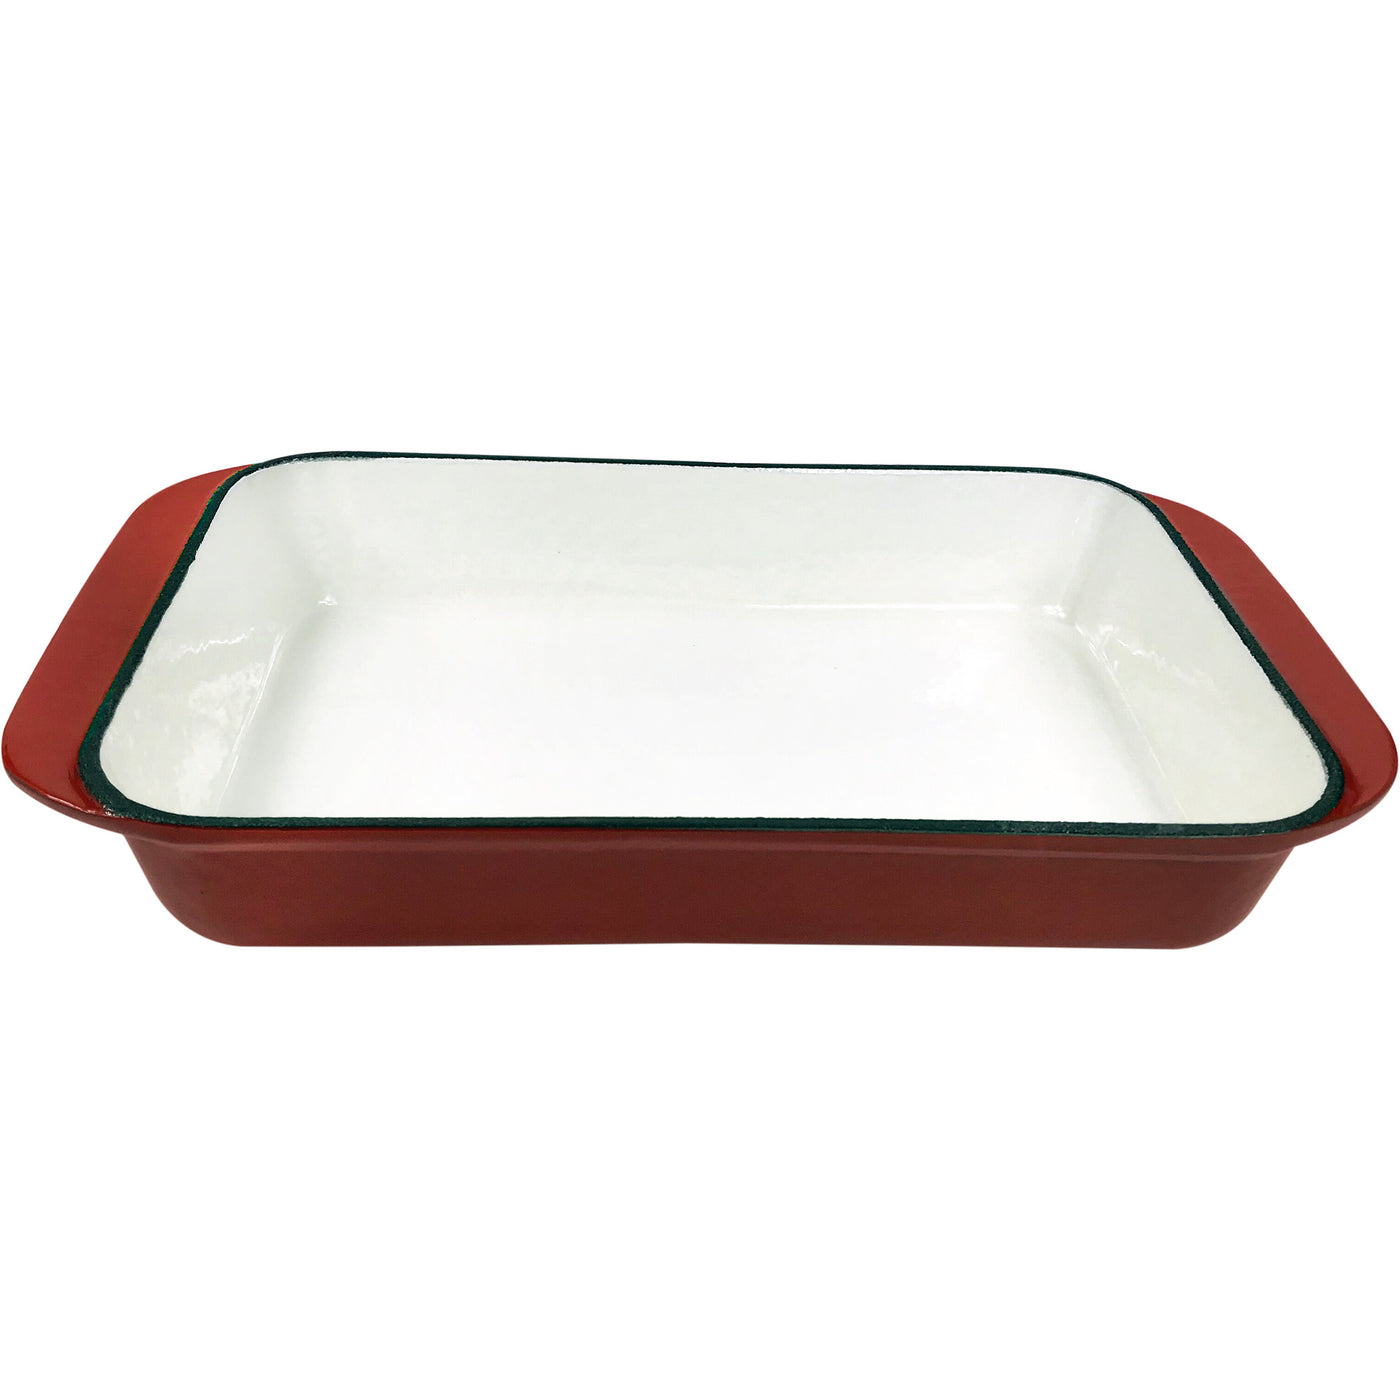 Эмалированная чугунная прямоугольная жаровня емкостью 2,9 кварты, форма для запекания, сковорода для лазаньи, глубокая сковорода - красная